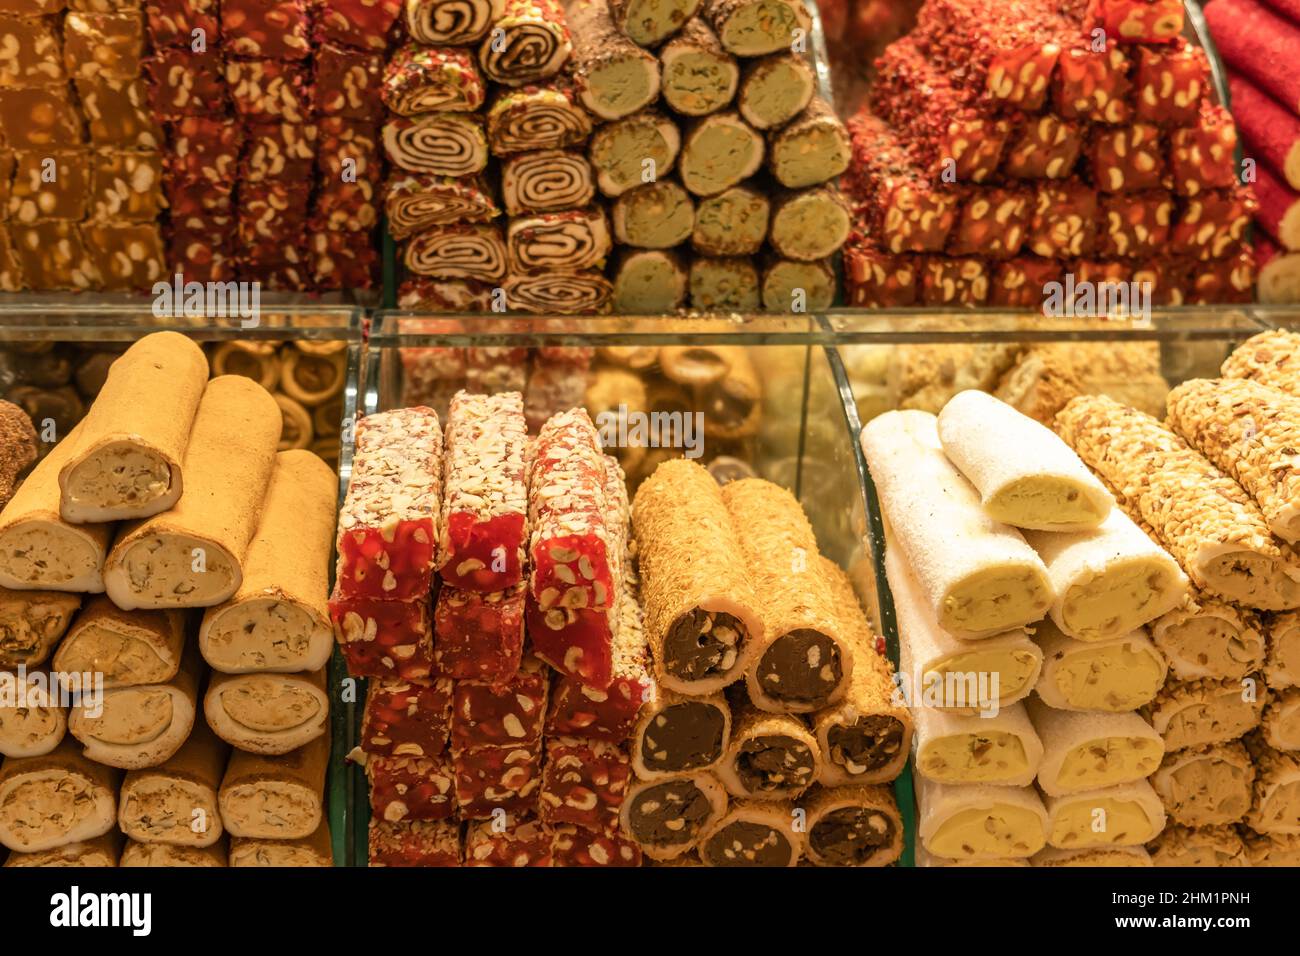 La delizia turca nel Grand Bazaar, Istanbul. Delizie turche in diversi sapori nel Grand Bazaar, Istanbul. Foto Stock